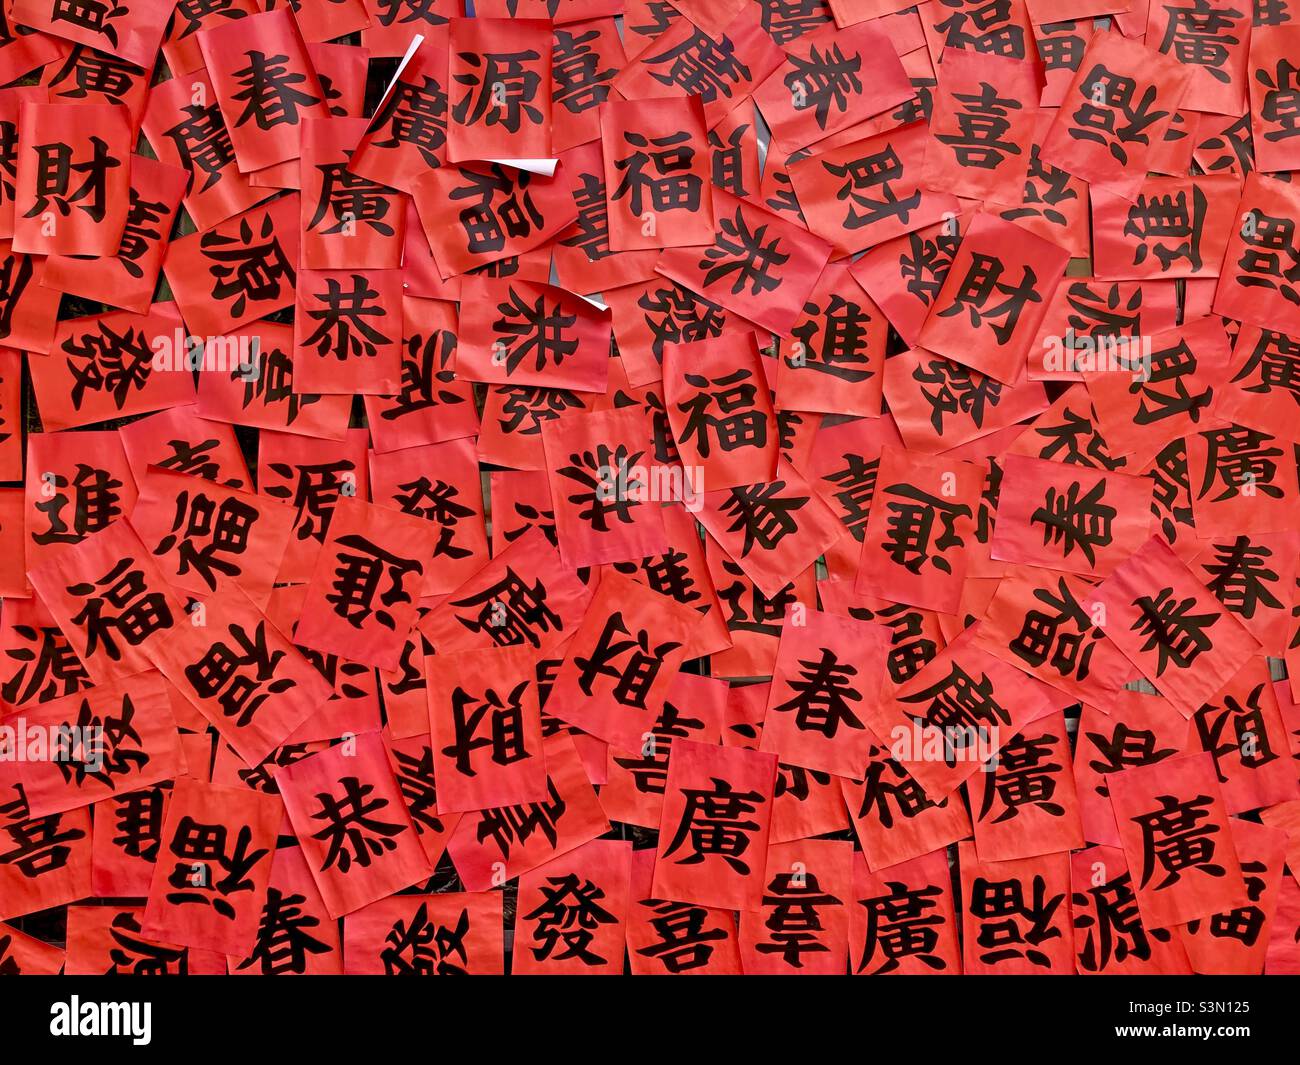 Bonne fortune, printemps, richesse et autres caractères chinois sur papier rouge Banque D'Images